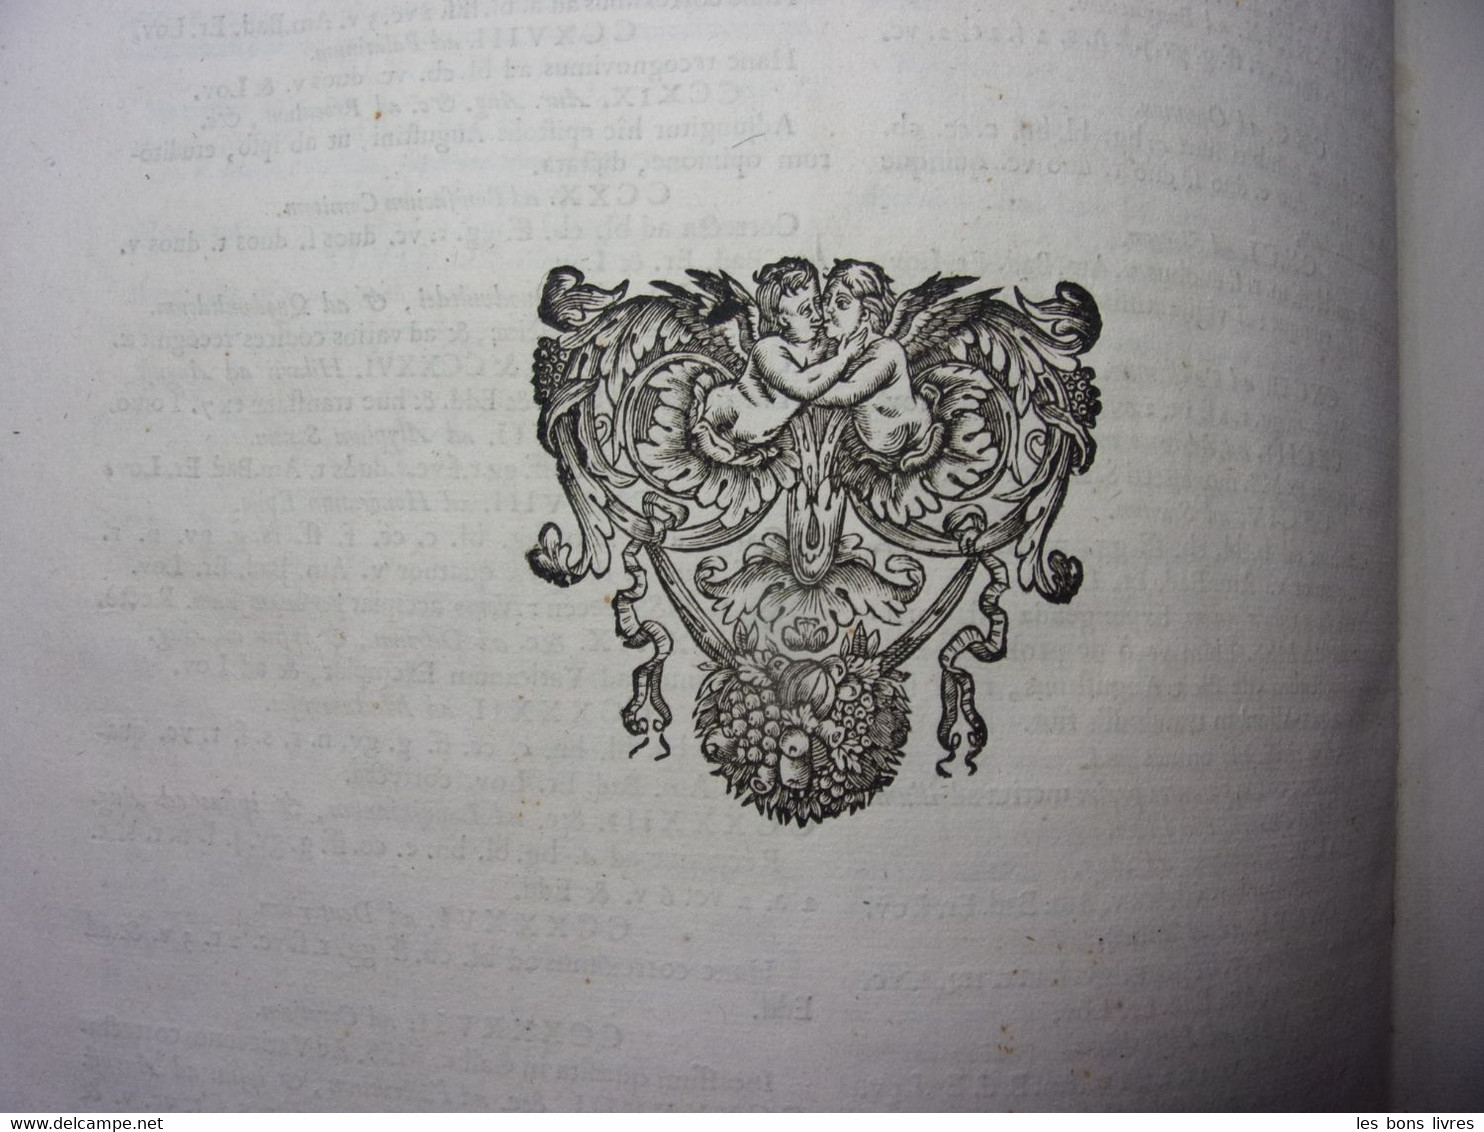 1689. Vol in folio. Santi Aurelii Augustini. Hipponensis episcopi Opérum.